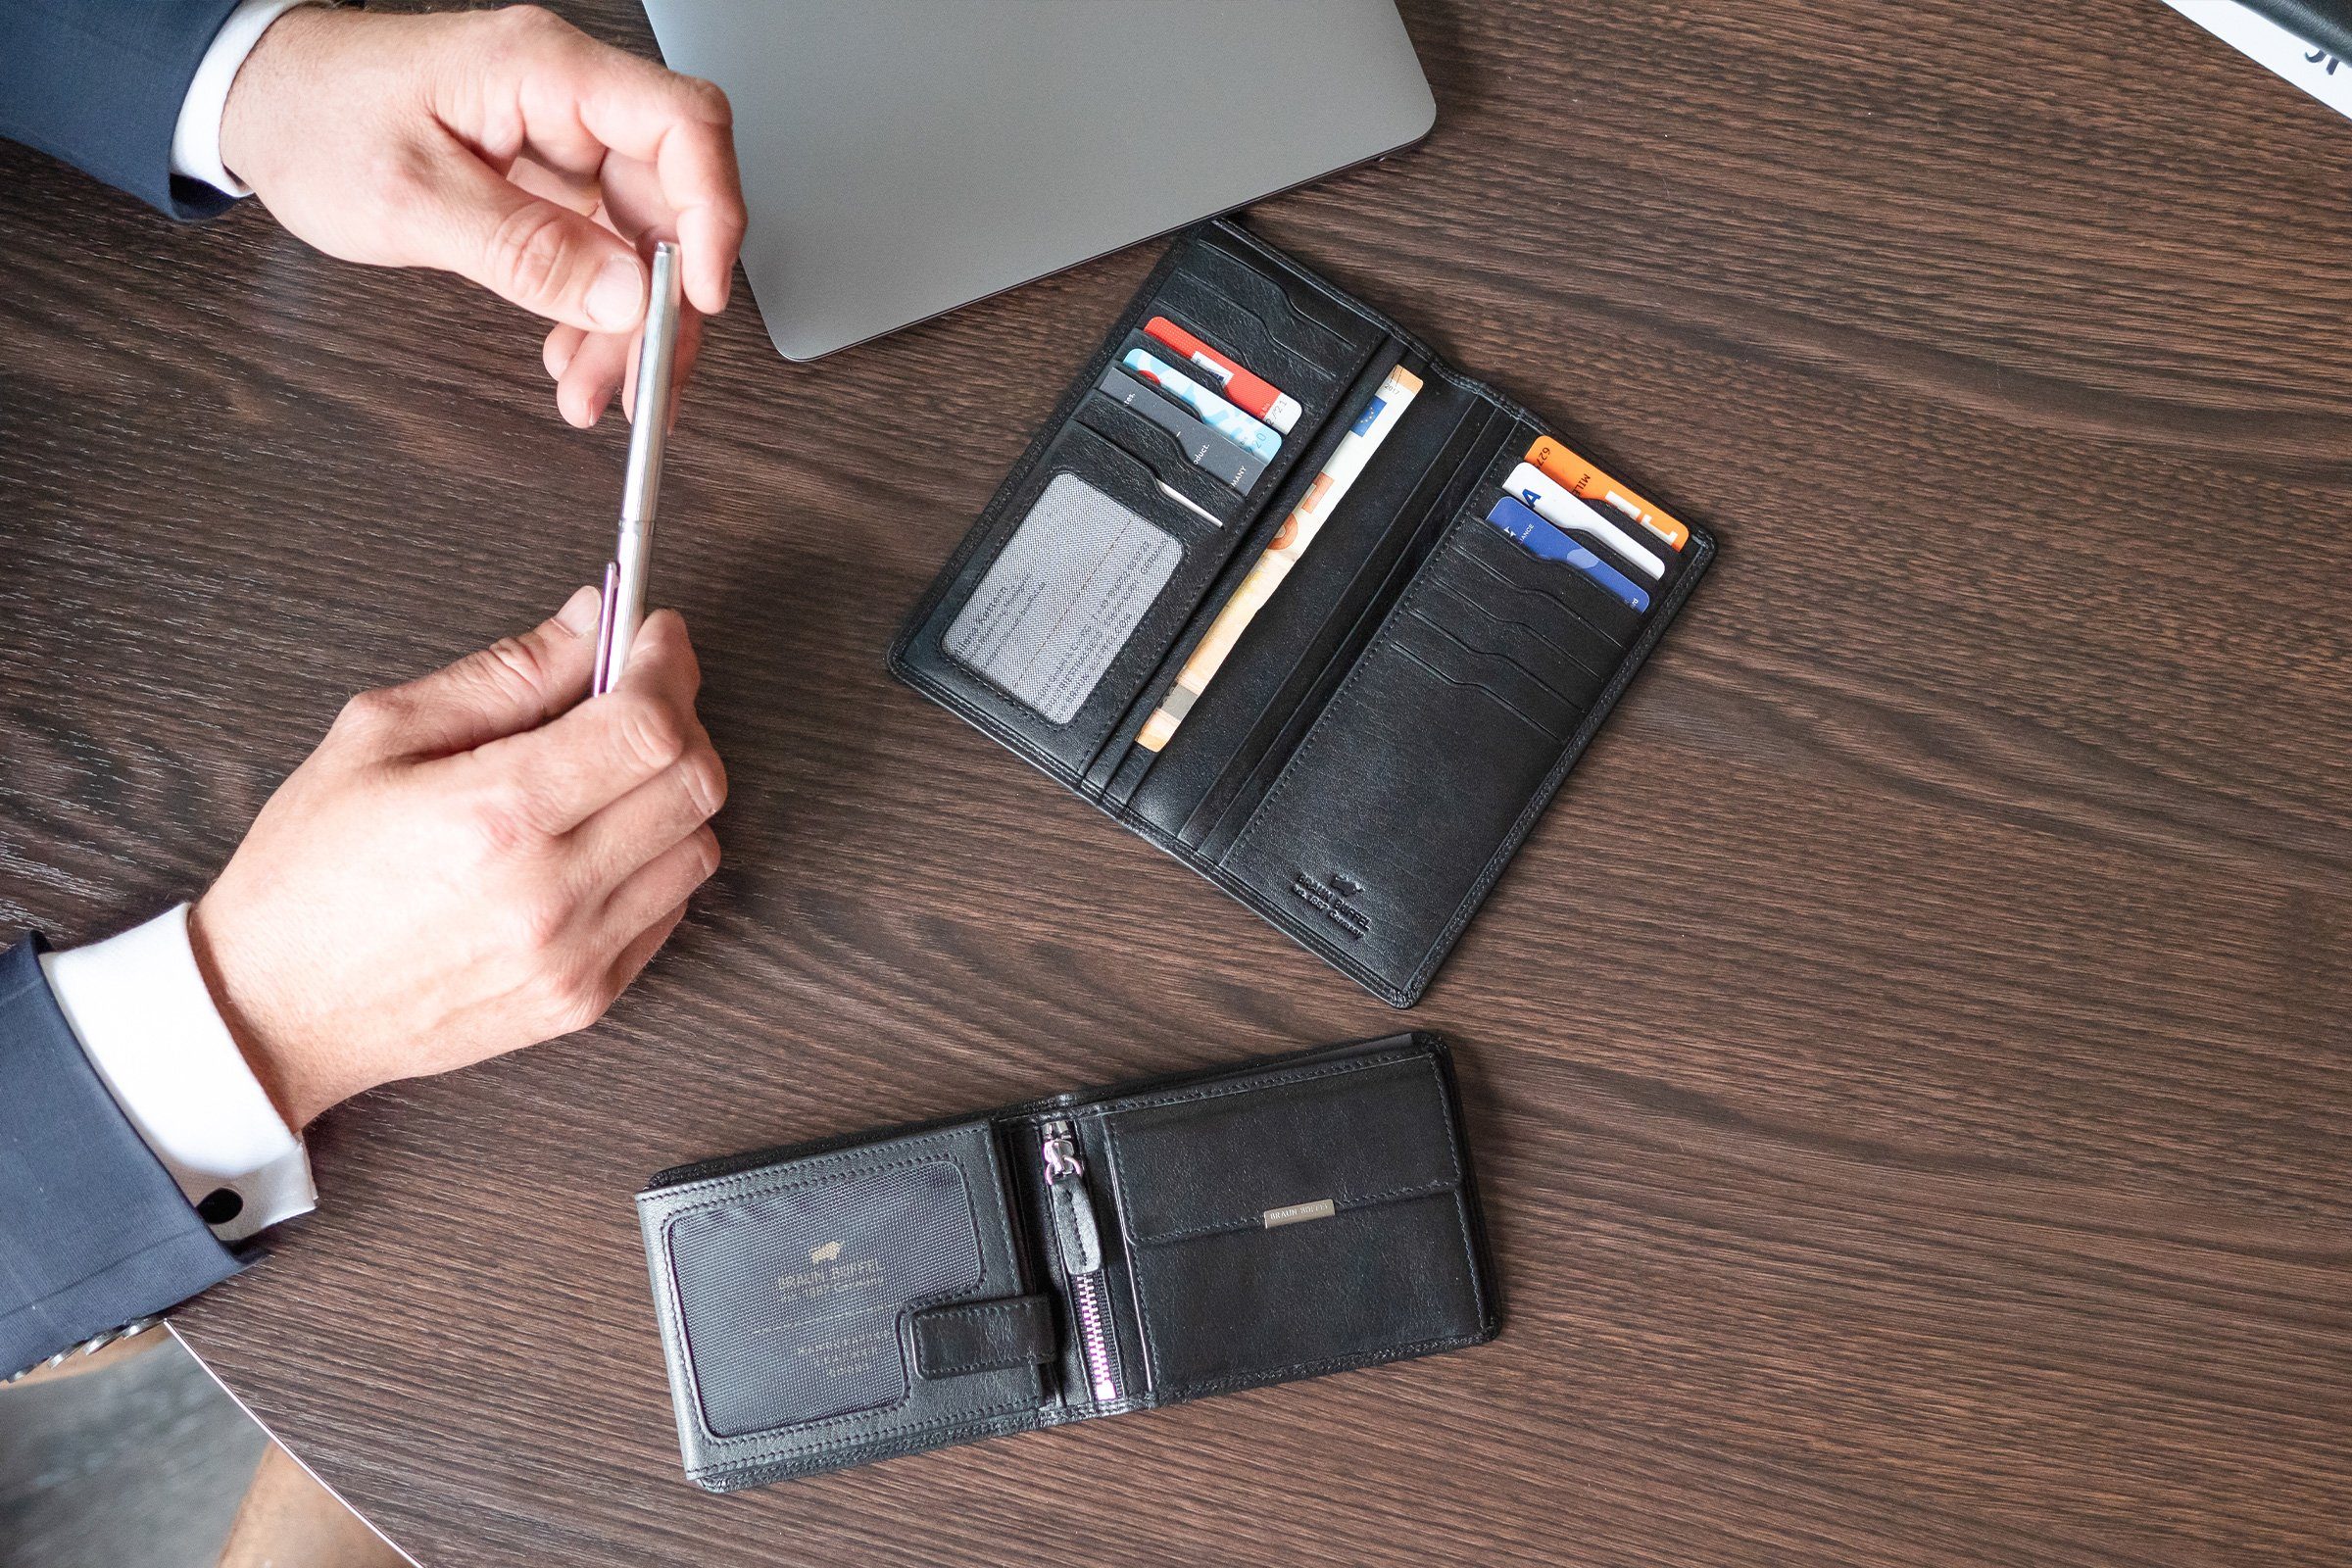 Braun Büffel Brieftasche GOLF 2.0 schwarz, mit Brieftasche 14CS Steckfächern großen